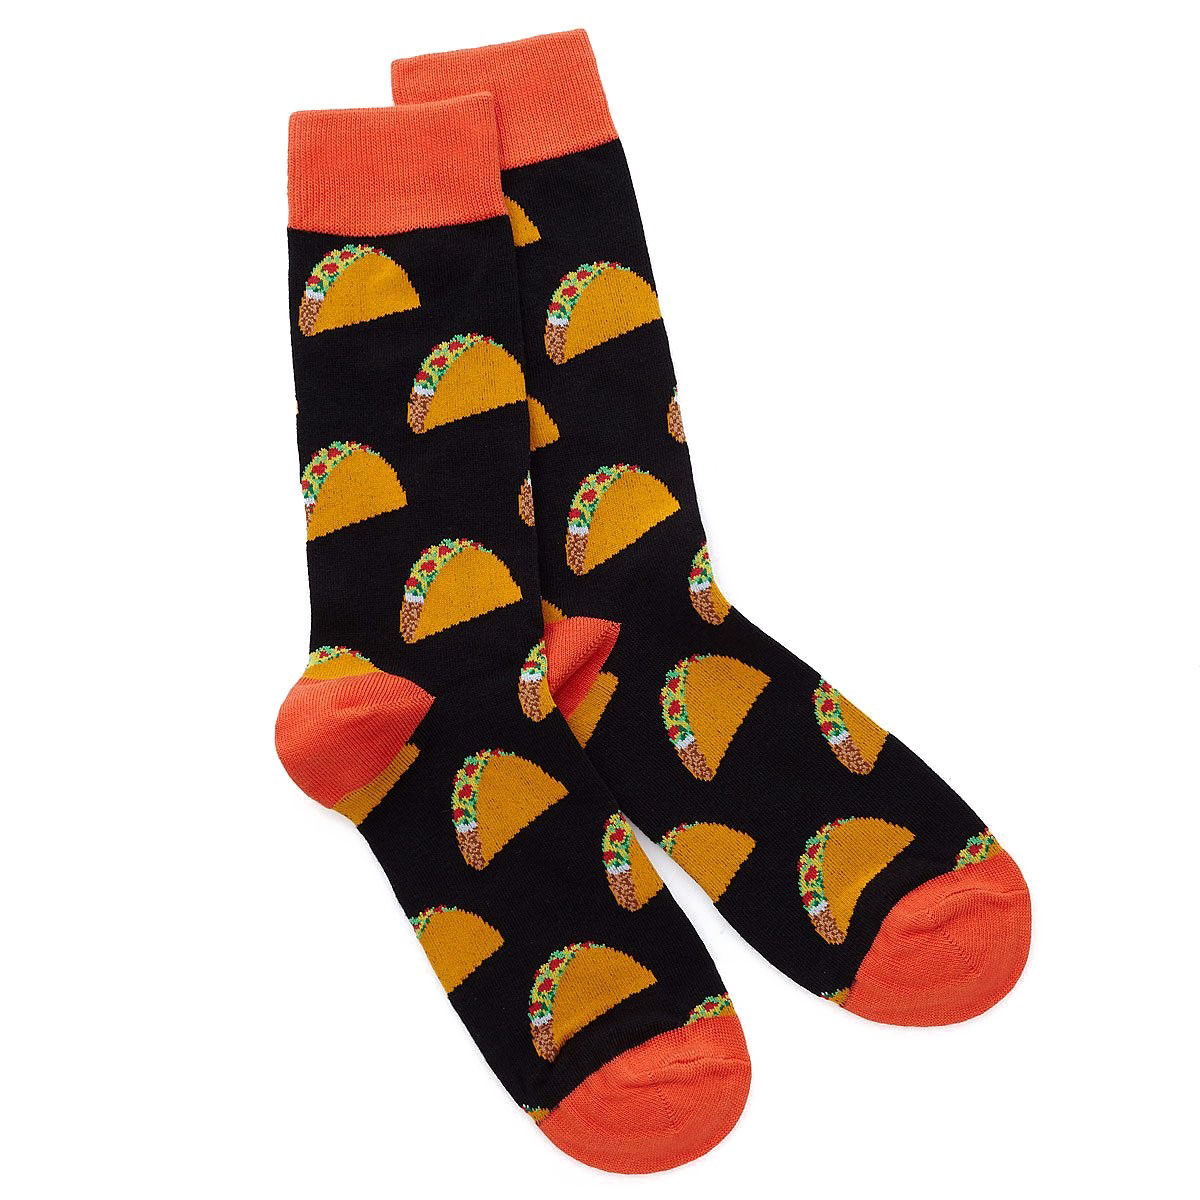 Socks PNG Image